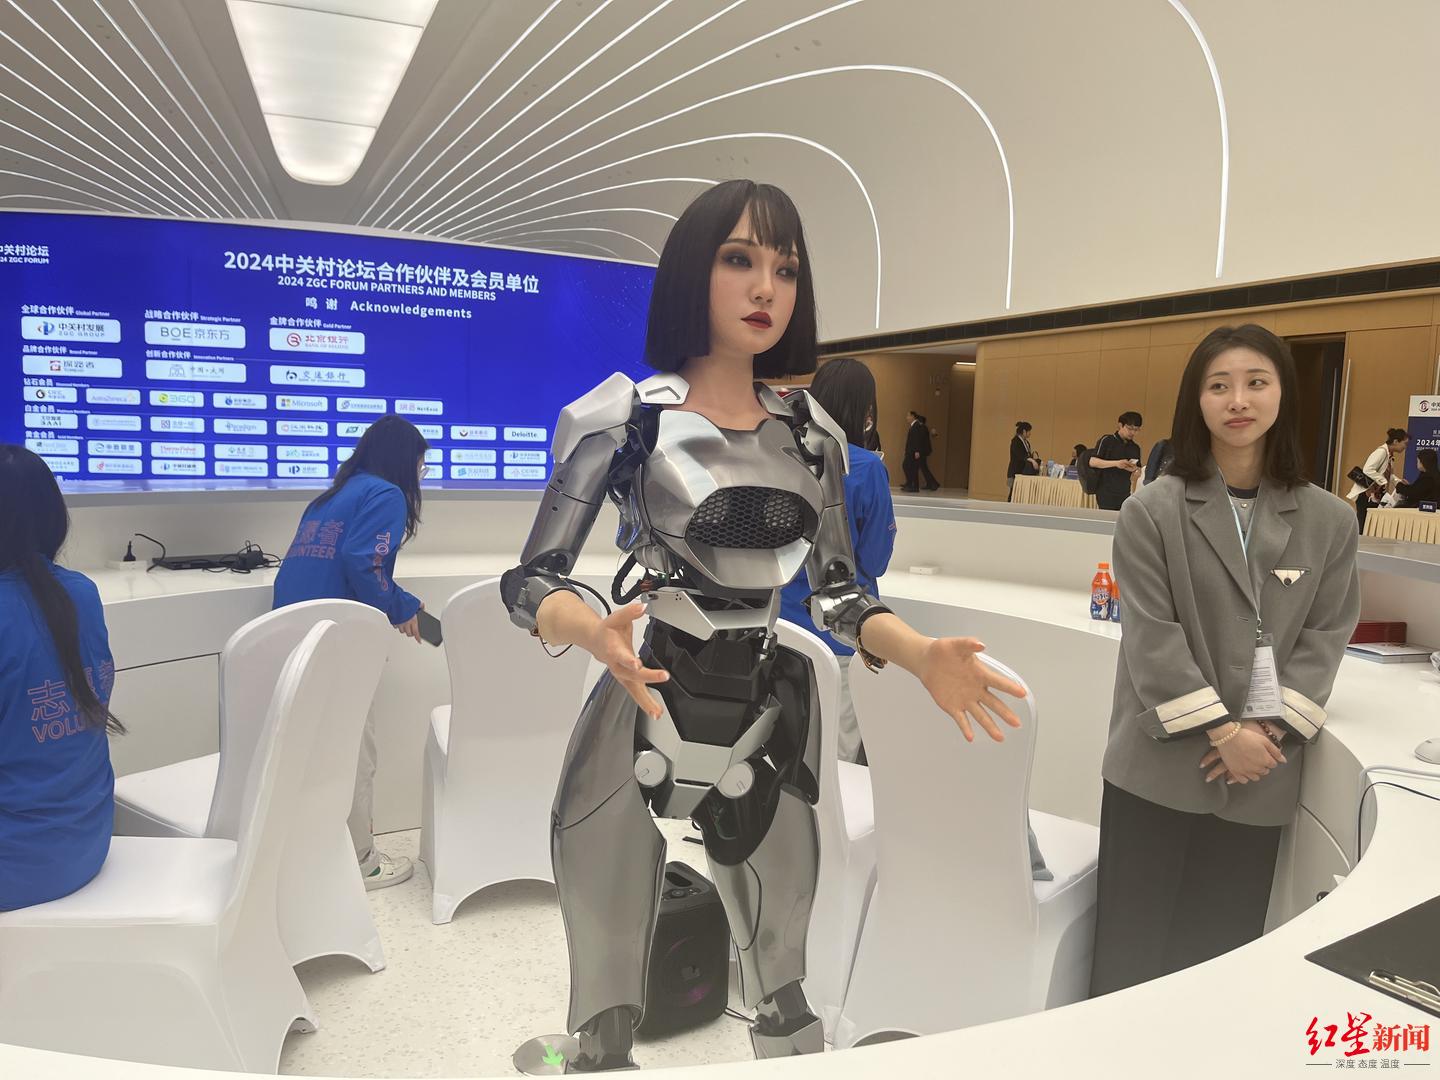  ▲ Bionic robot at Zhongguancun Forum